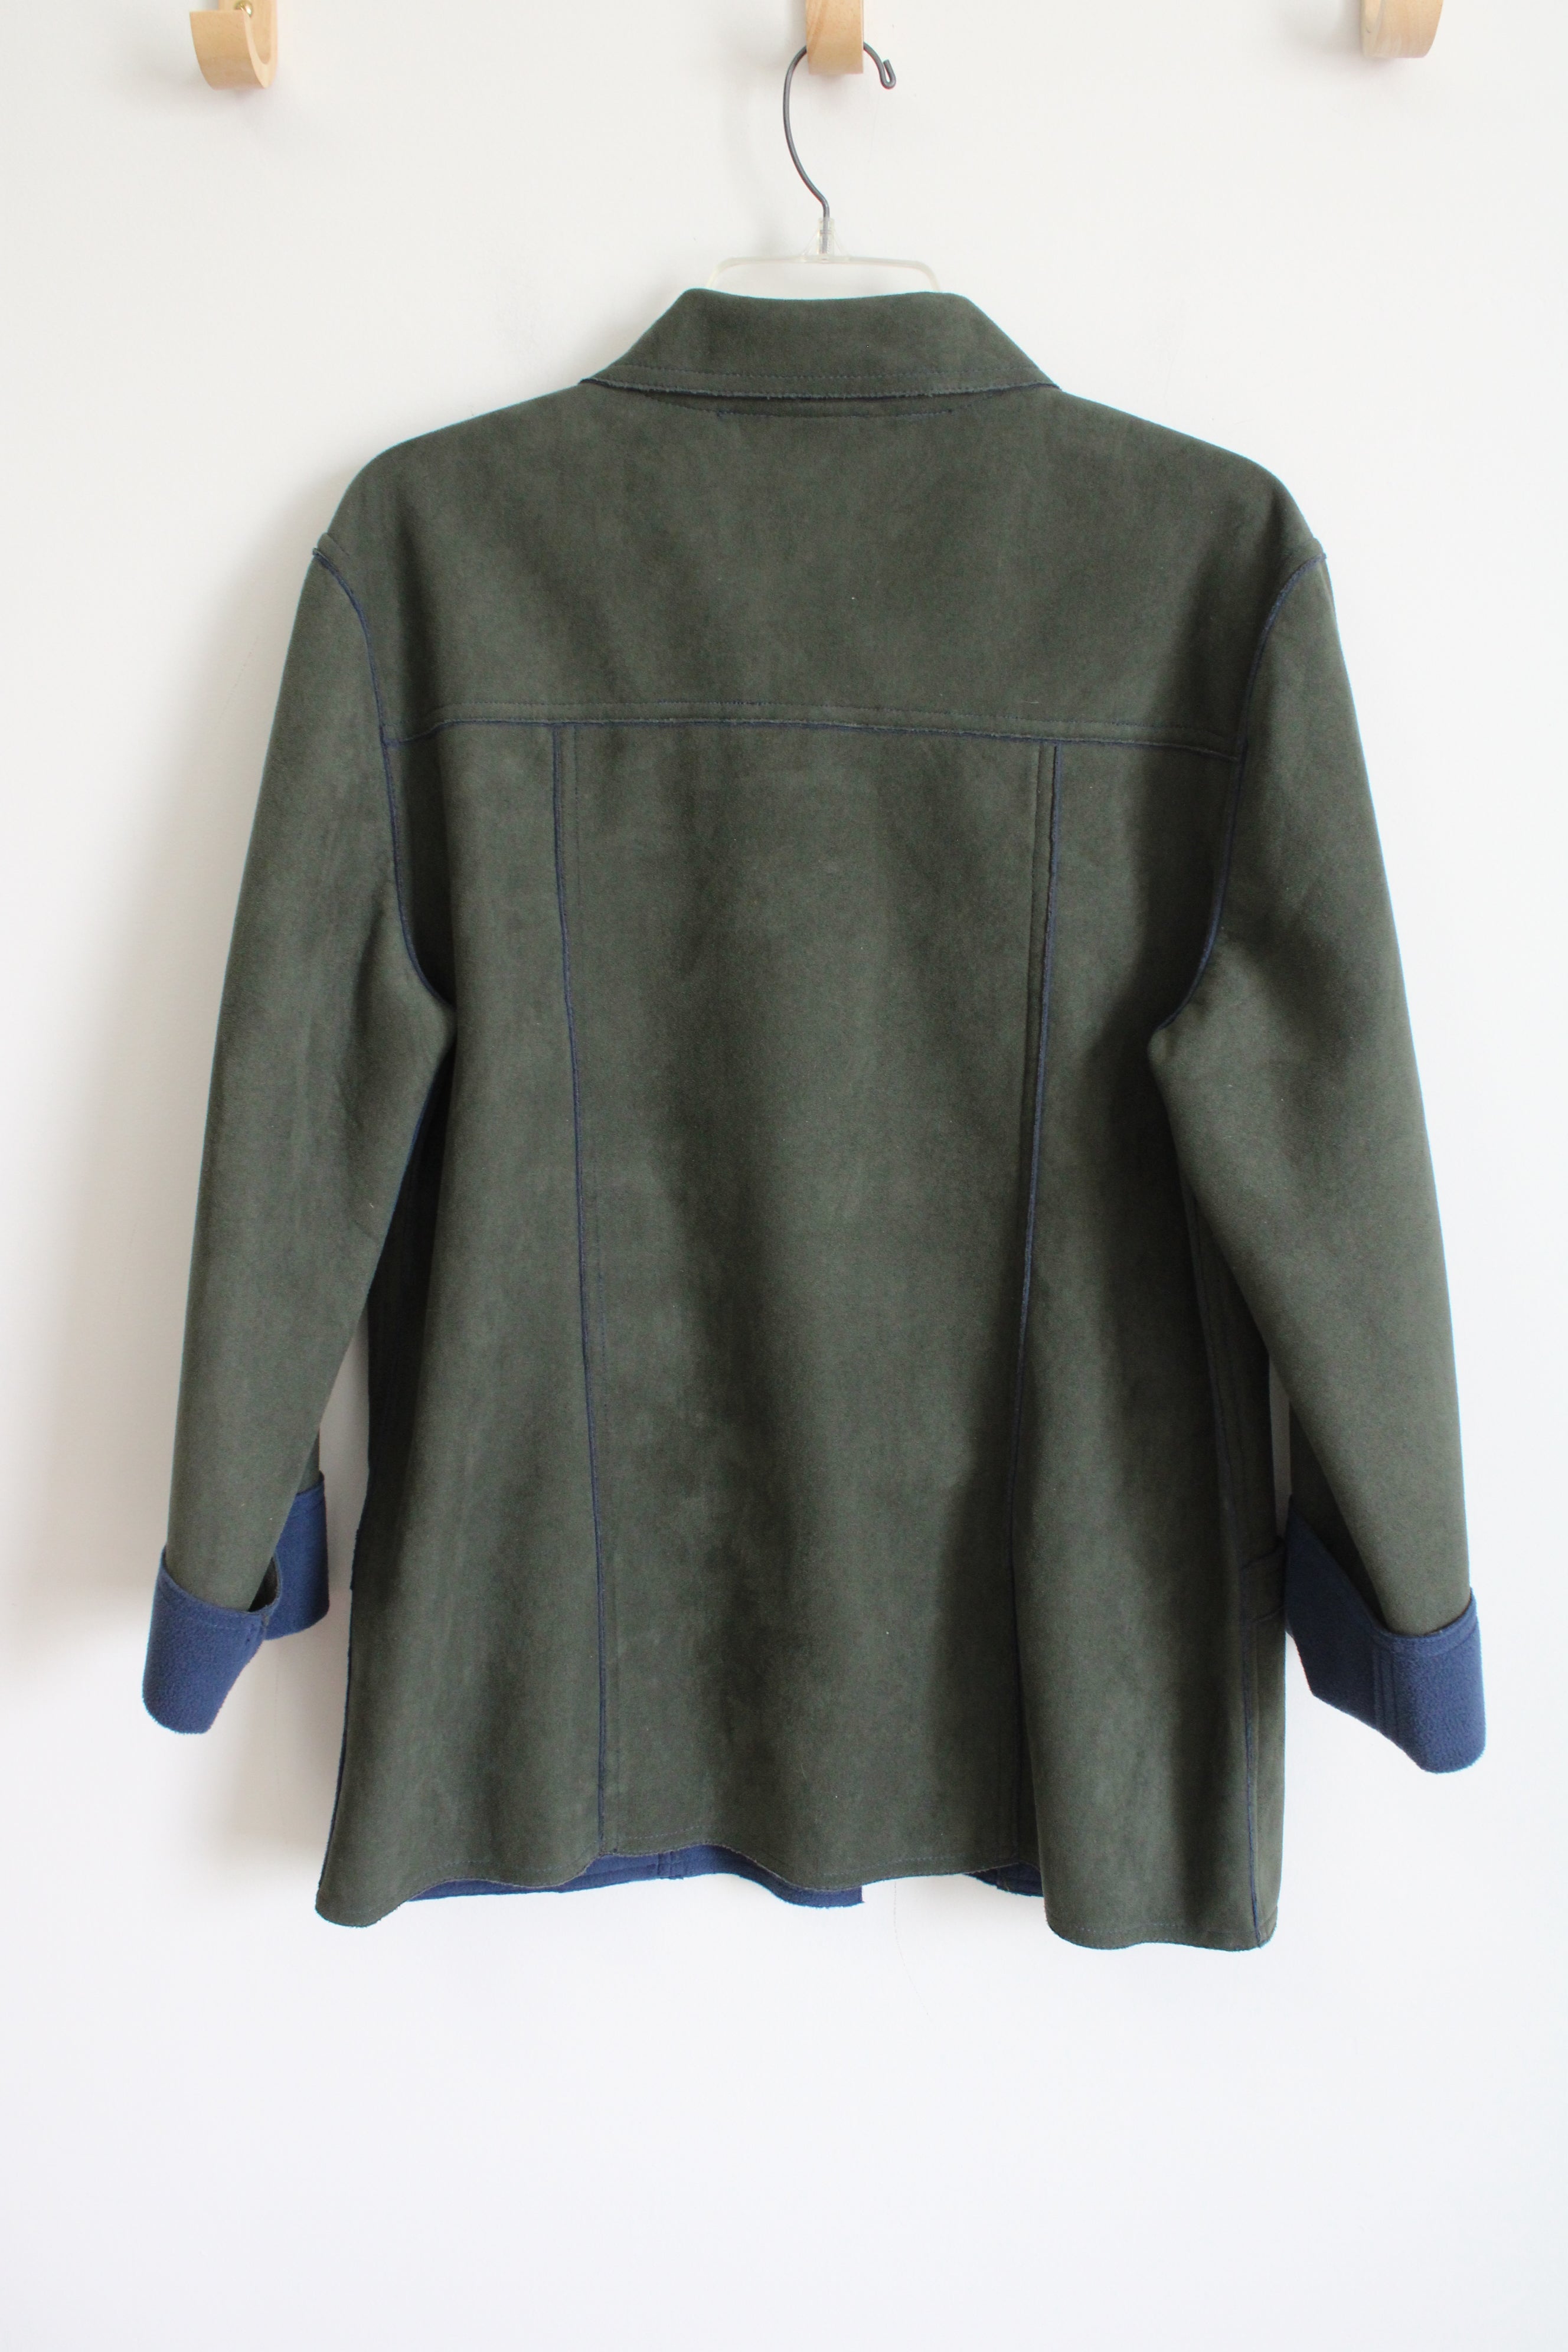 Bonworth Green Sueded Blue Fleece Lined Jacket | S